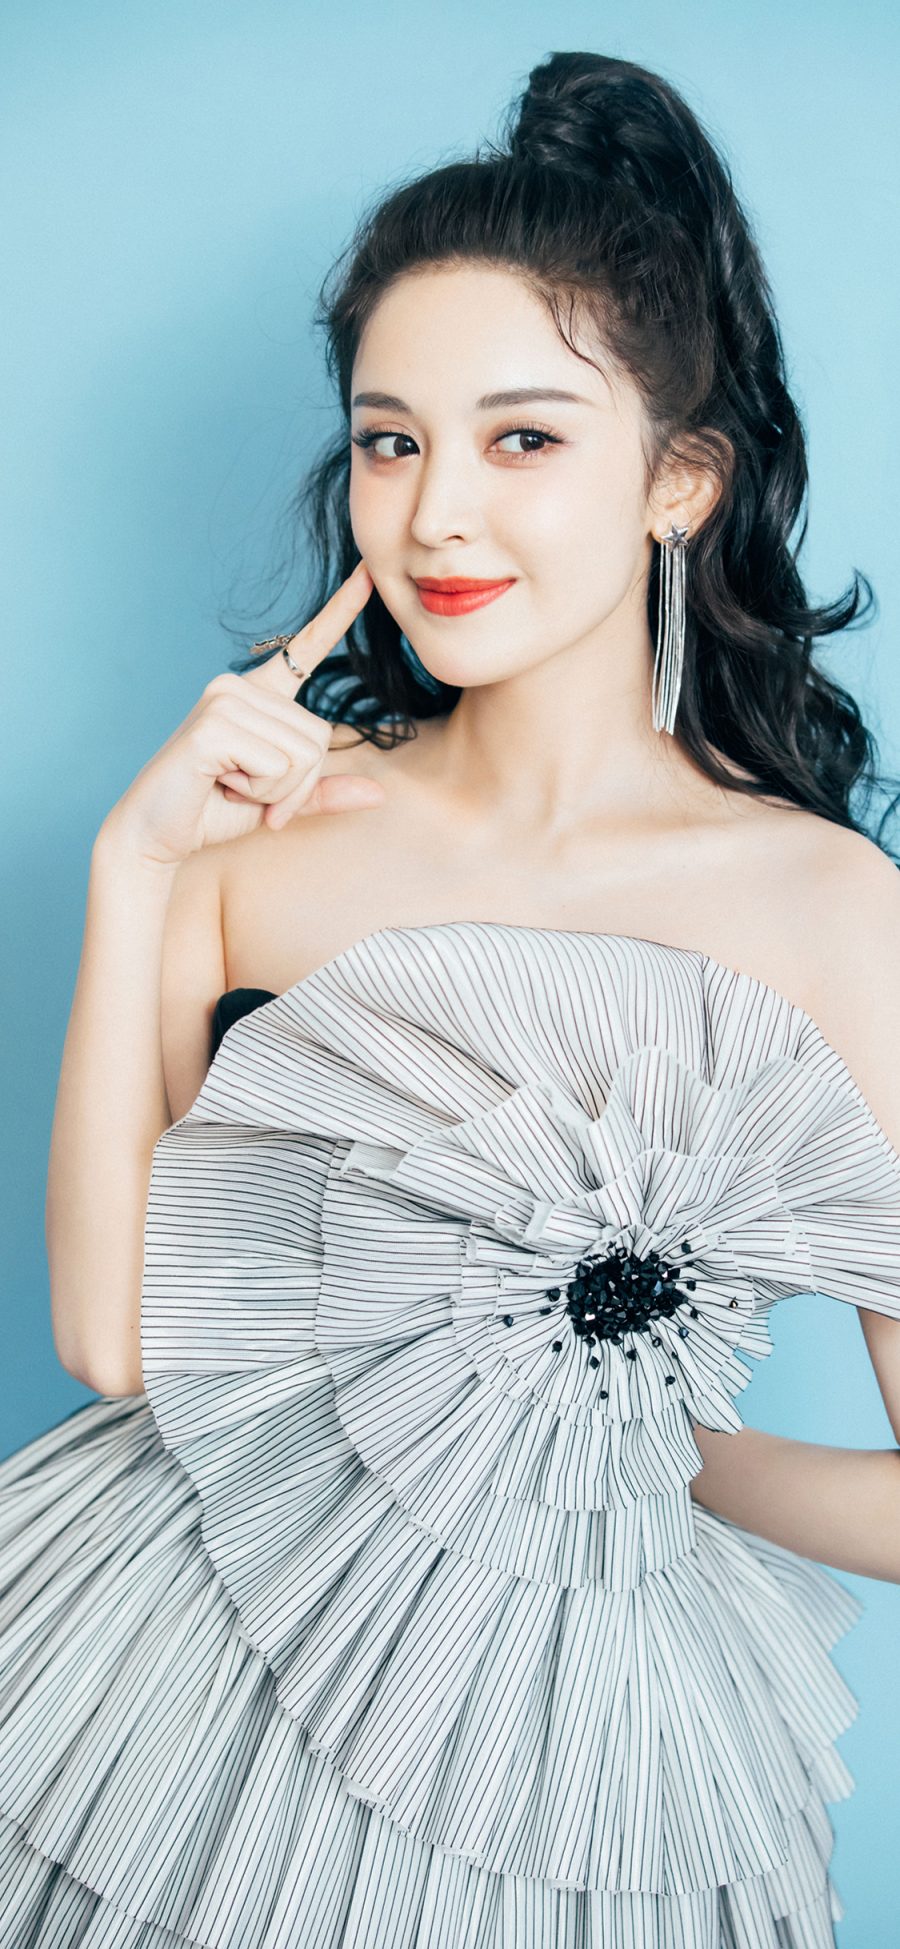 [2436×1125]古力娜扎 艺人 演员 女星 苹果手机美女壁纸图片